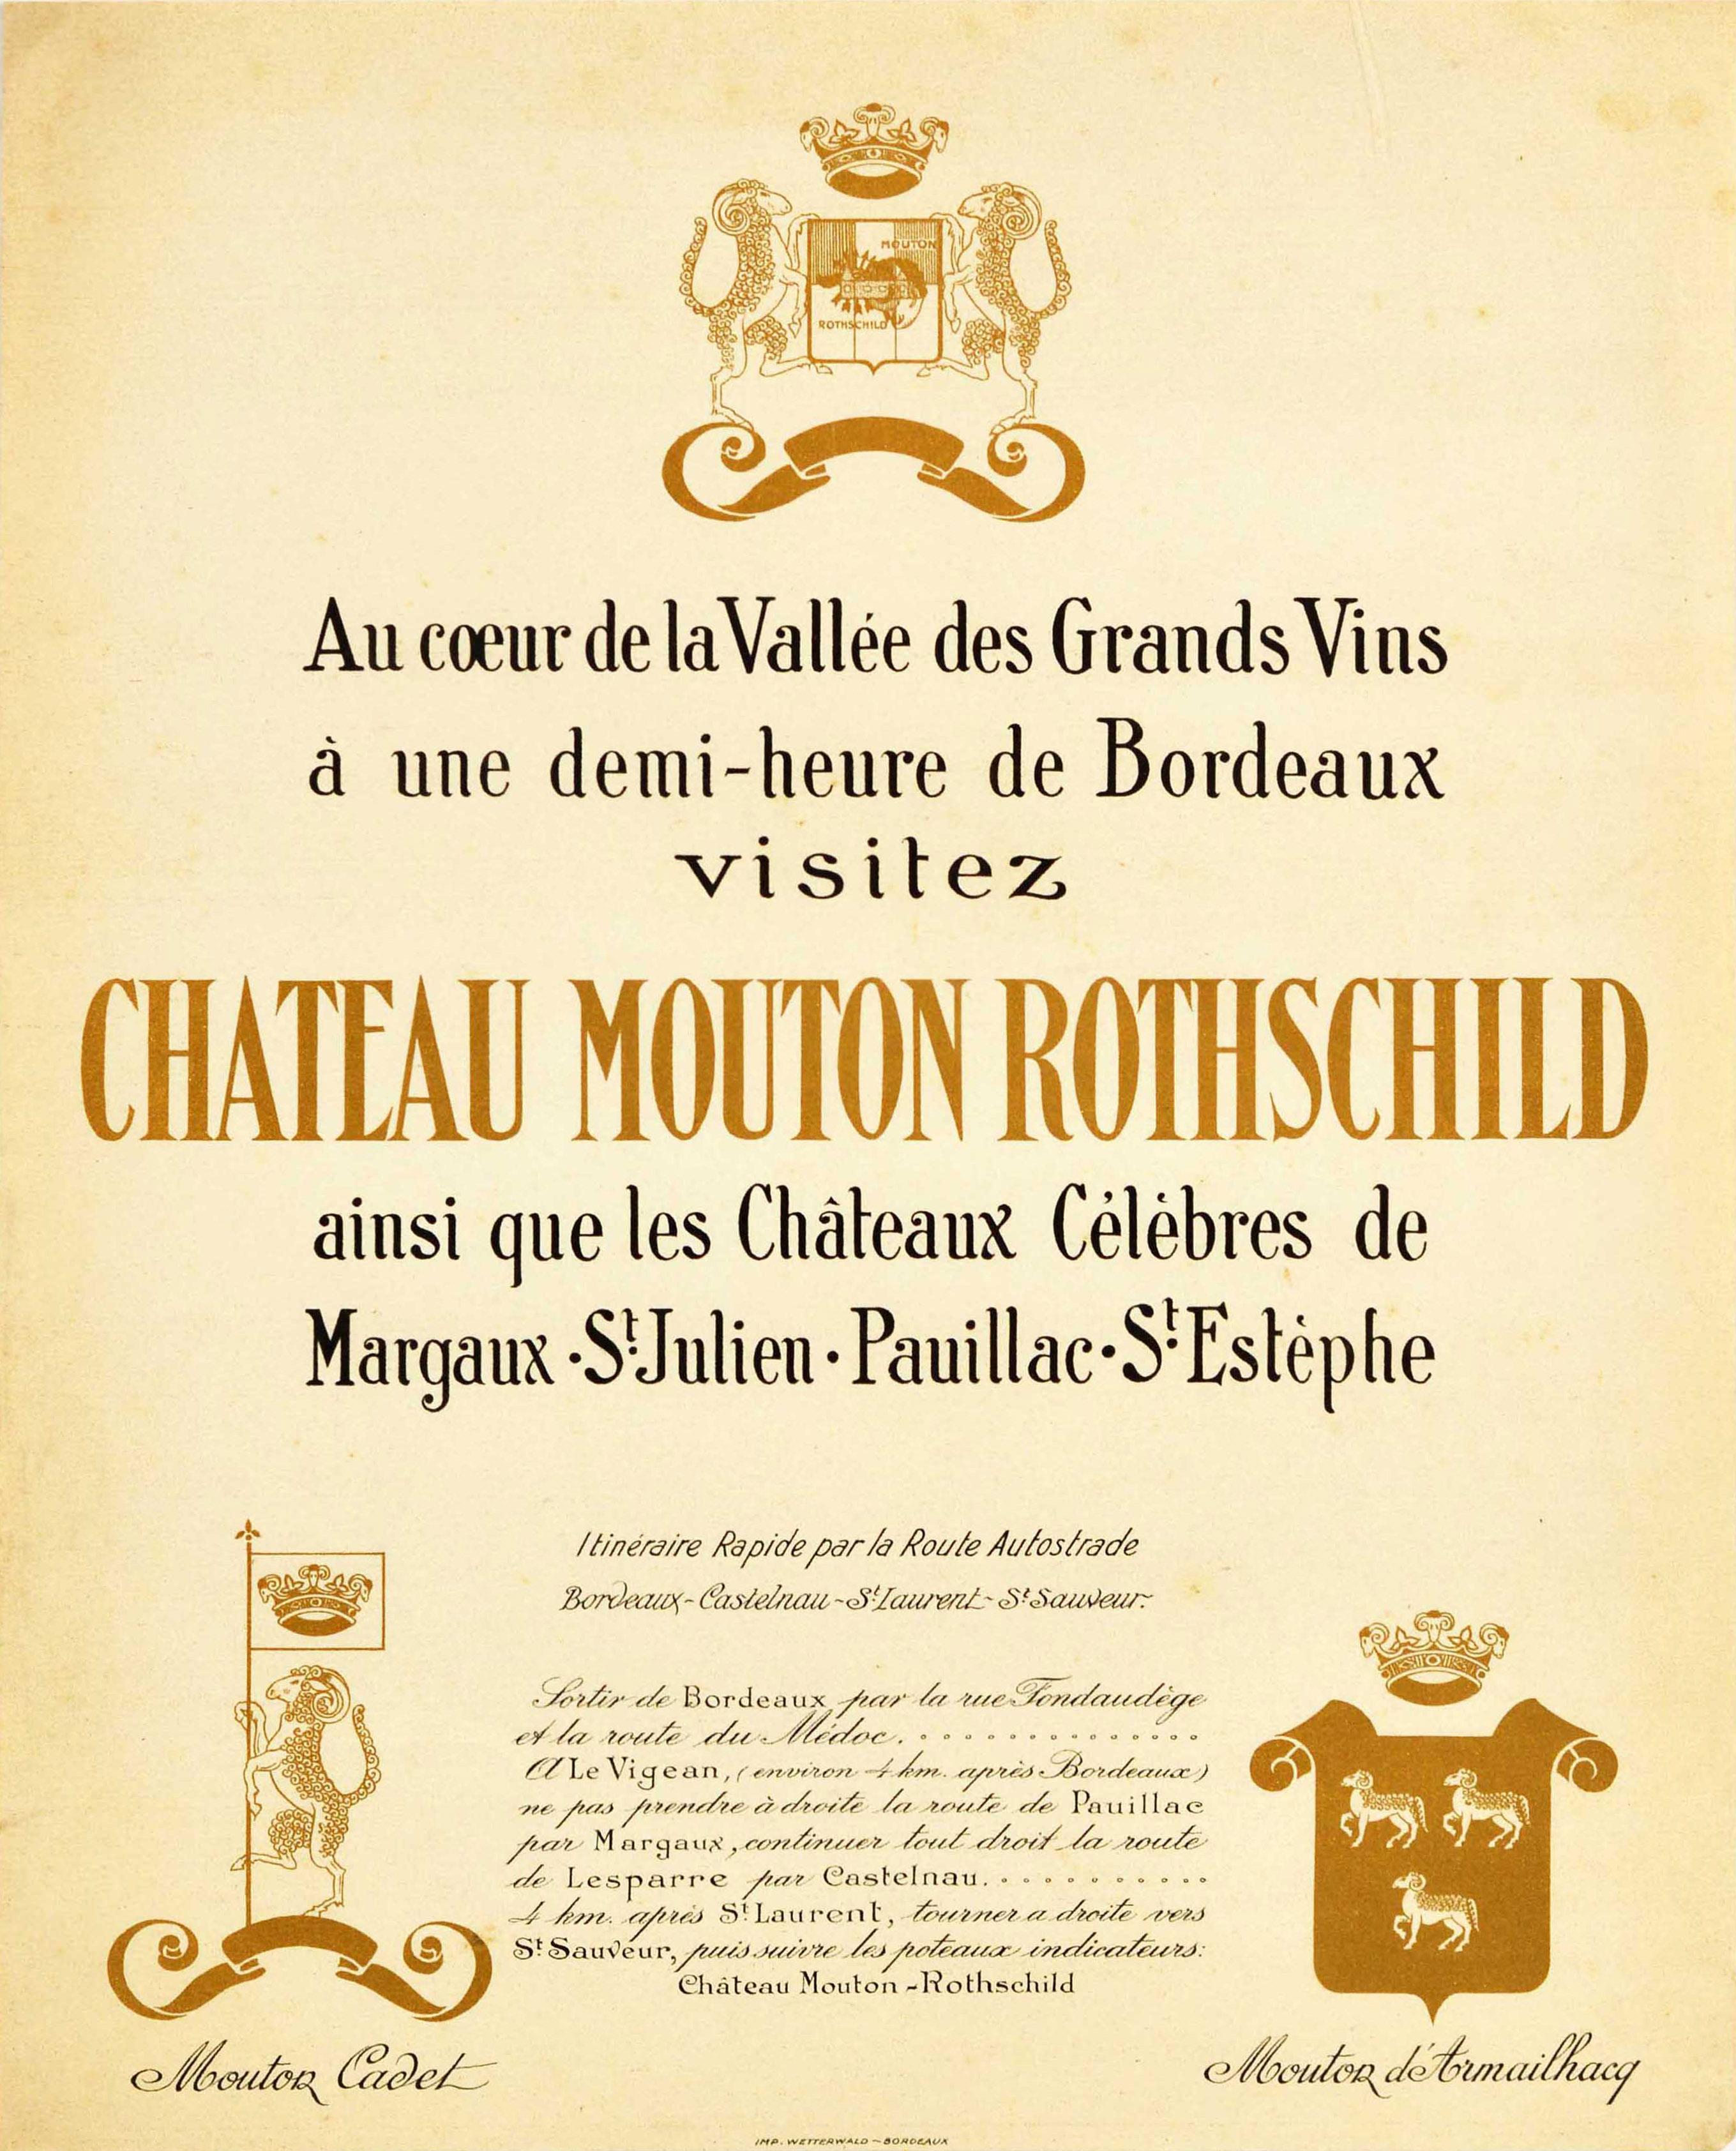 Unknown Print - Original Antique Poster For Chateau Mouton Rothschild Bordeaux Wine Grands Vins 